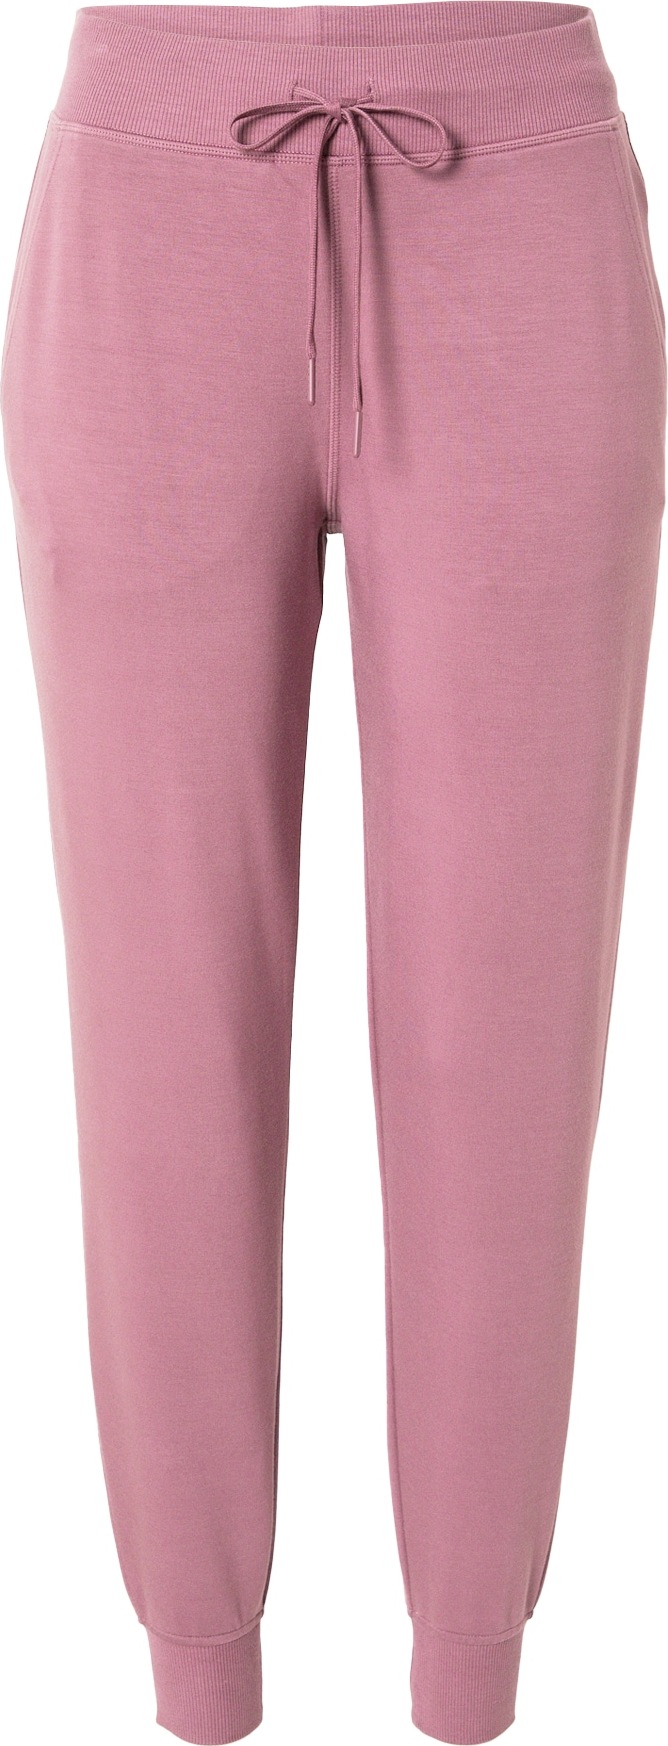 Skechers Performance Sportovní kalhoty růžový melír